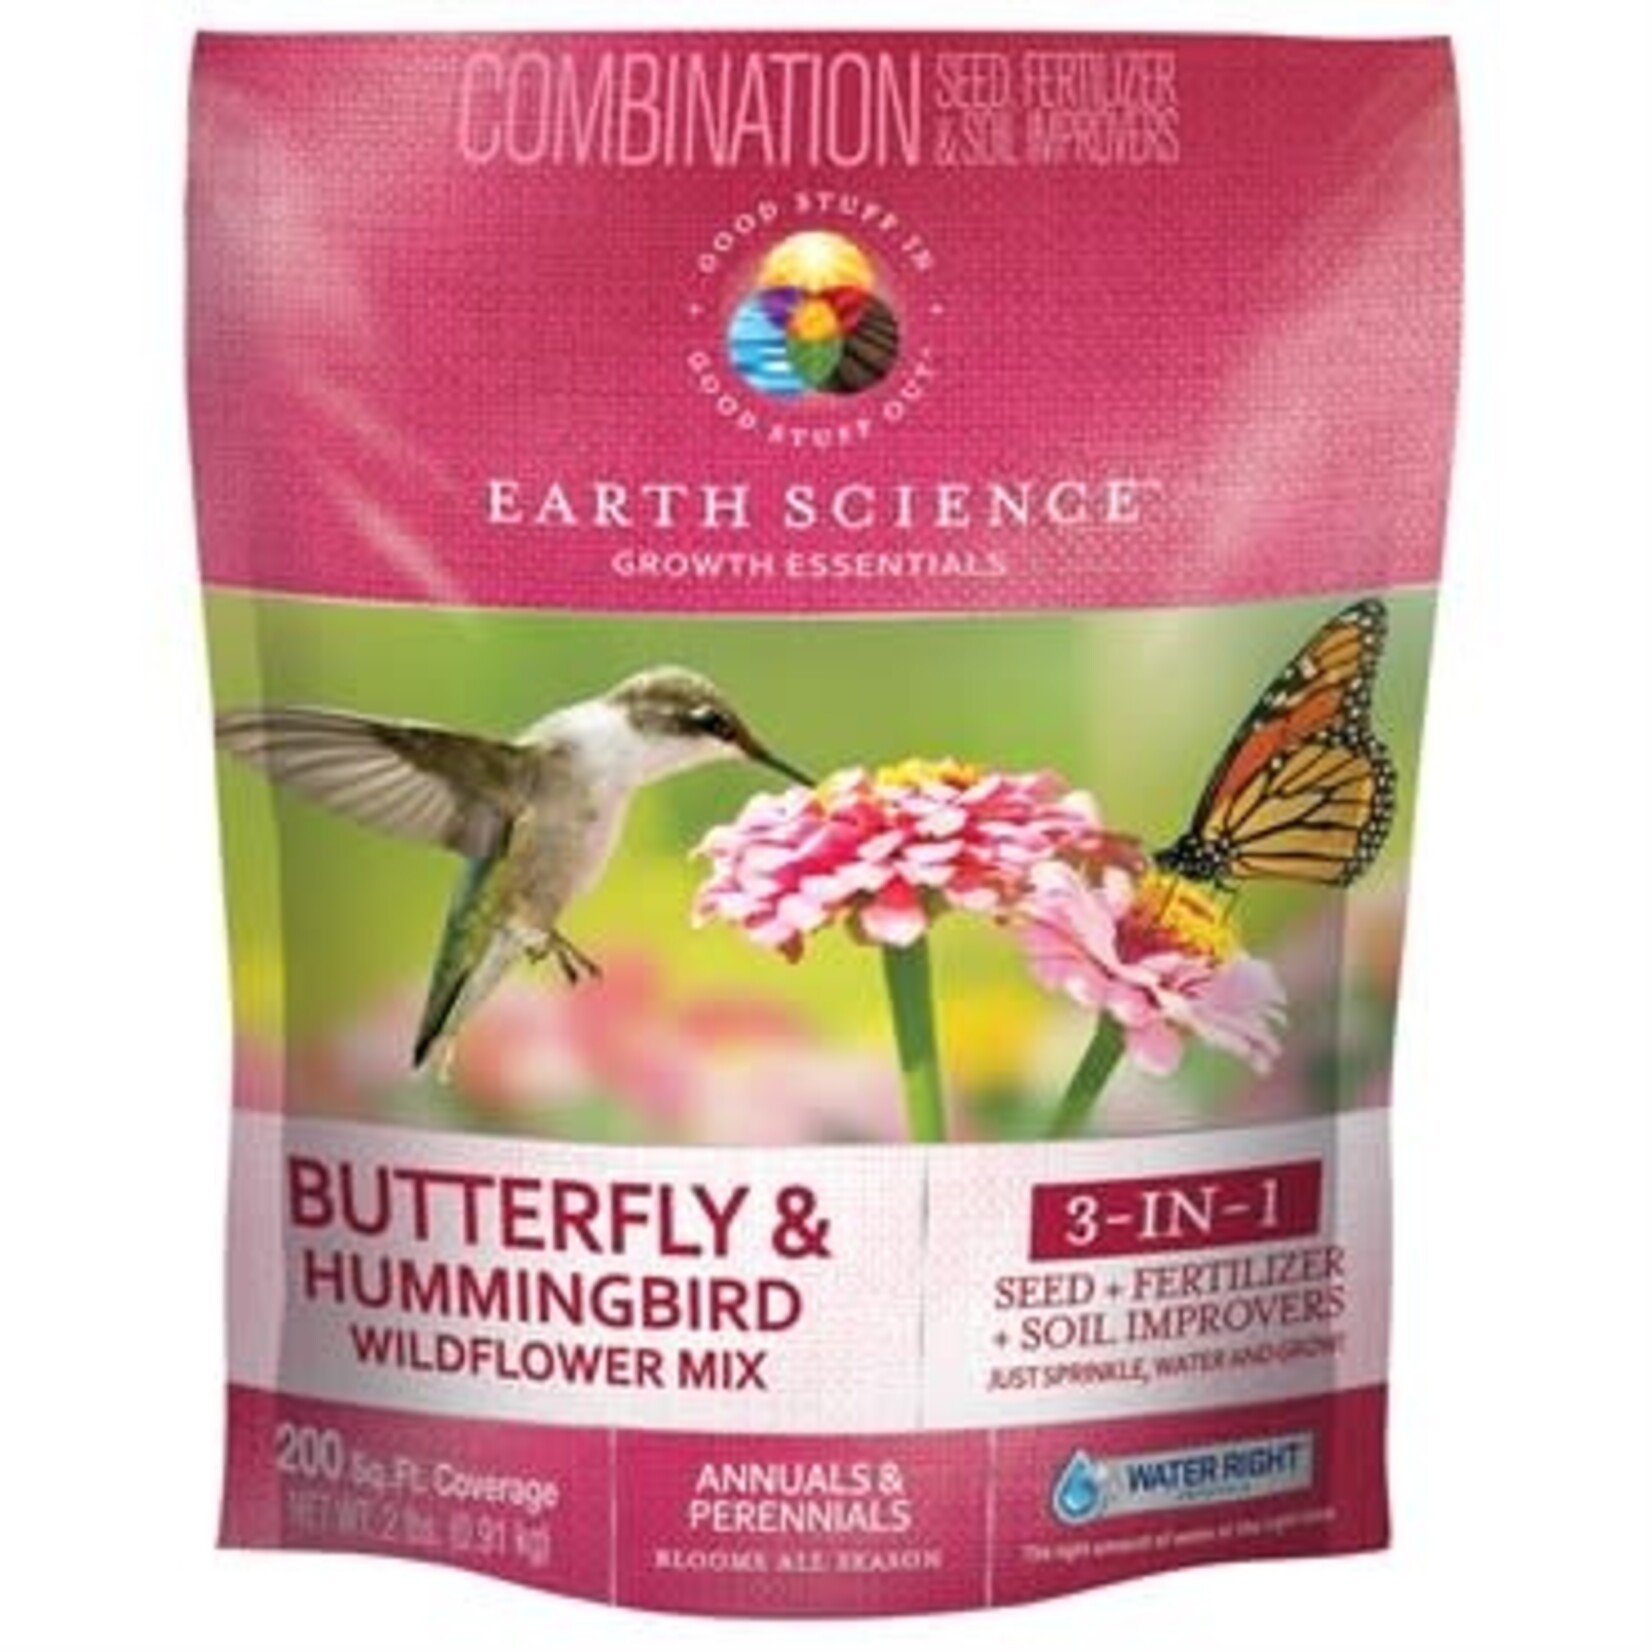 Encap 2# Butterfly Hummingbird Wildflower Mix